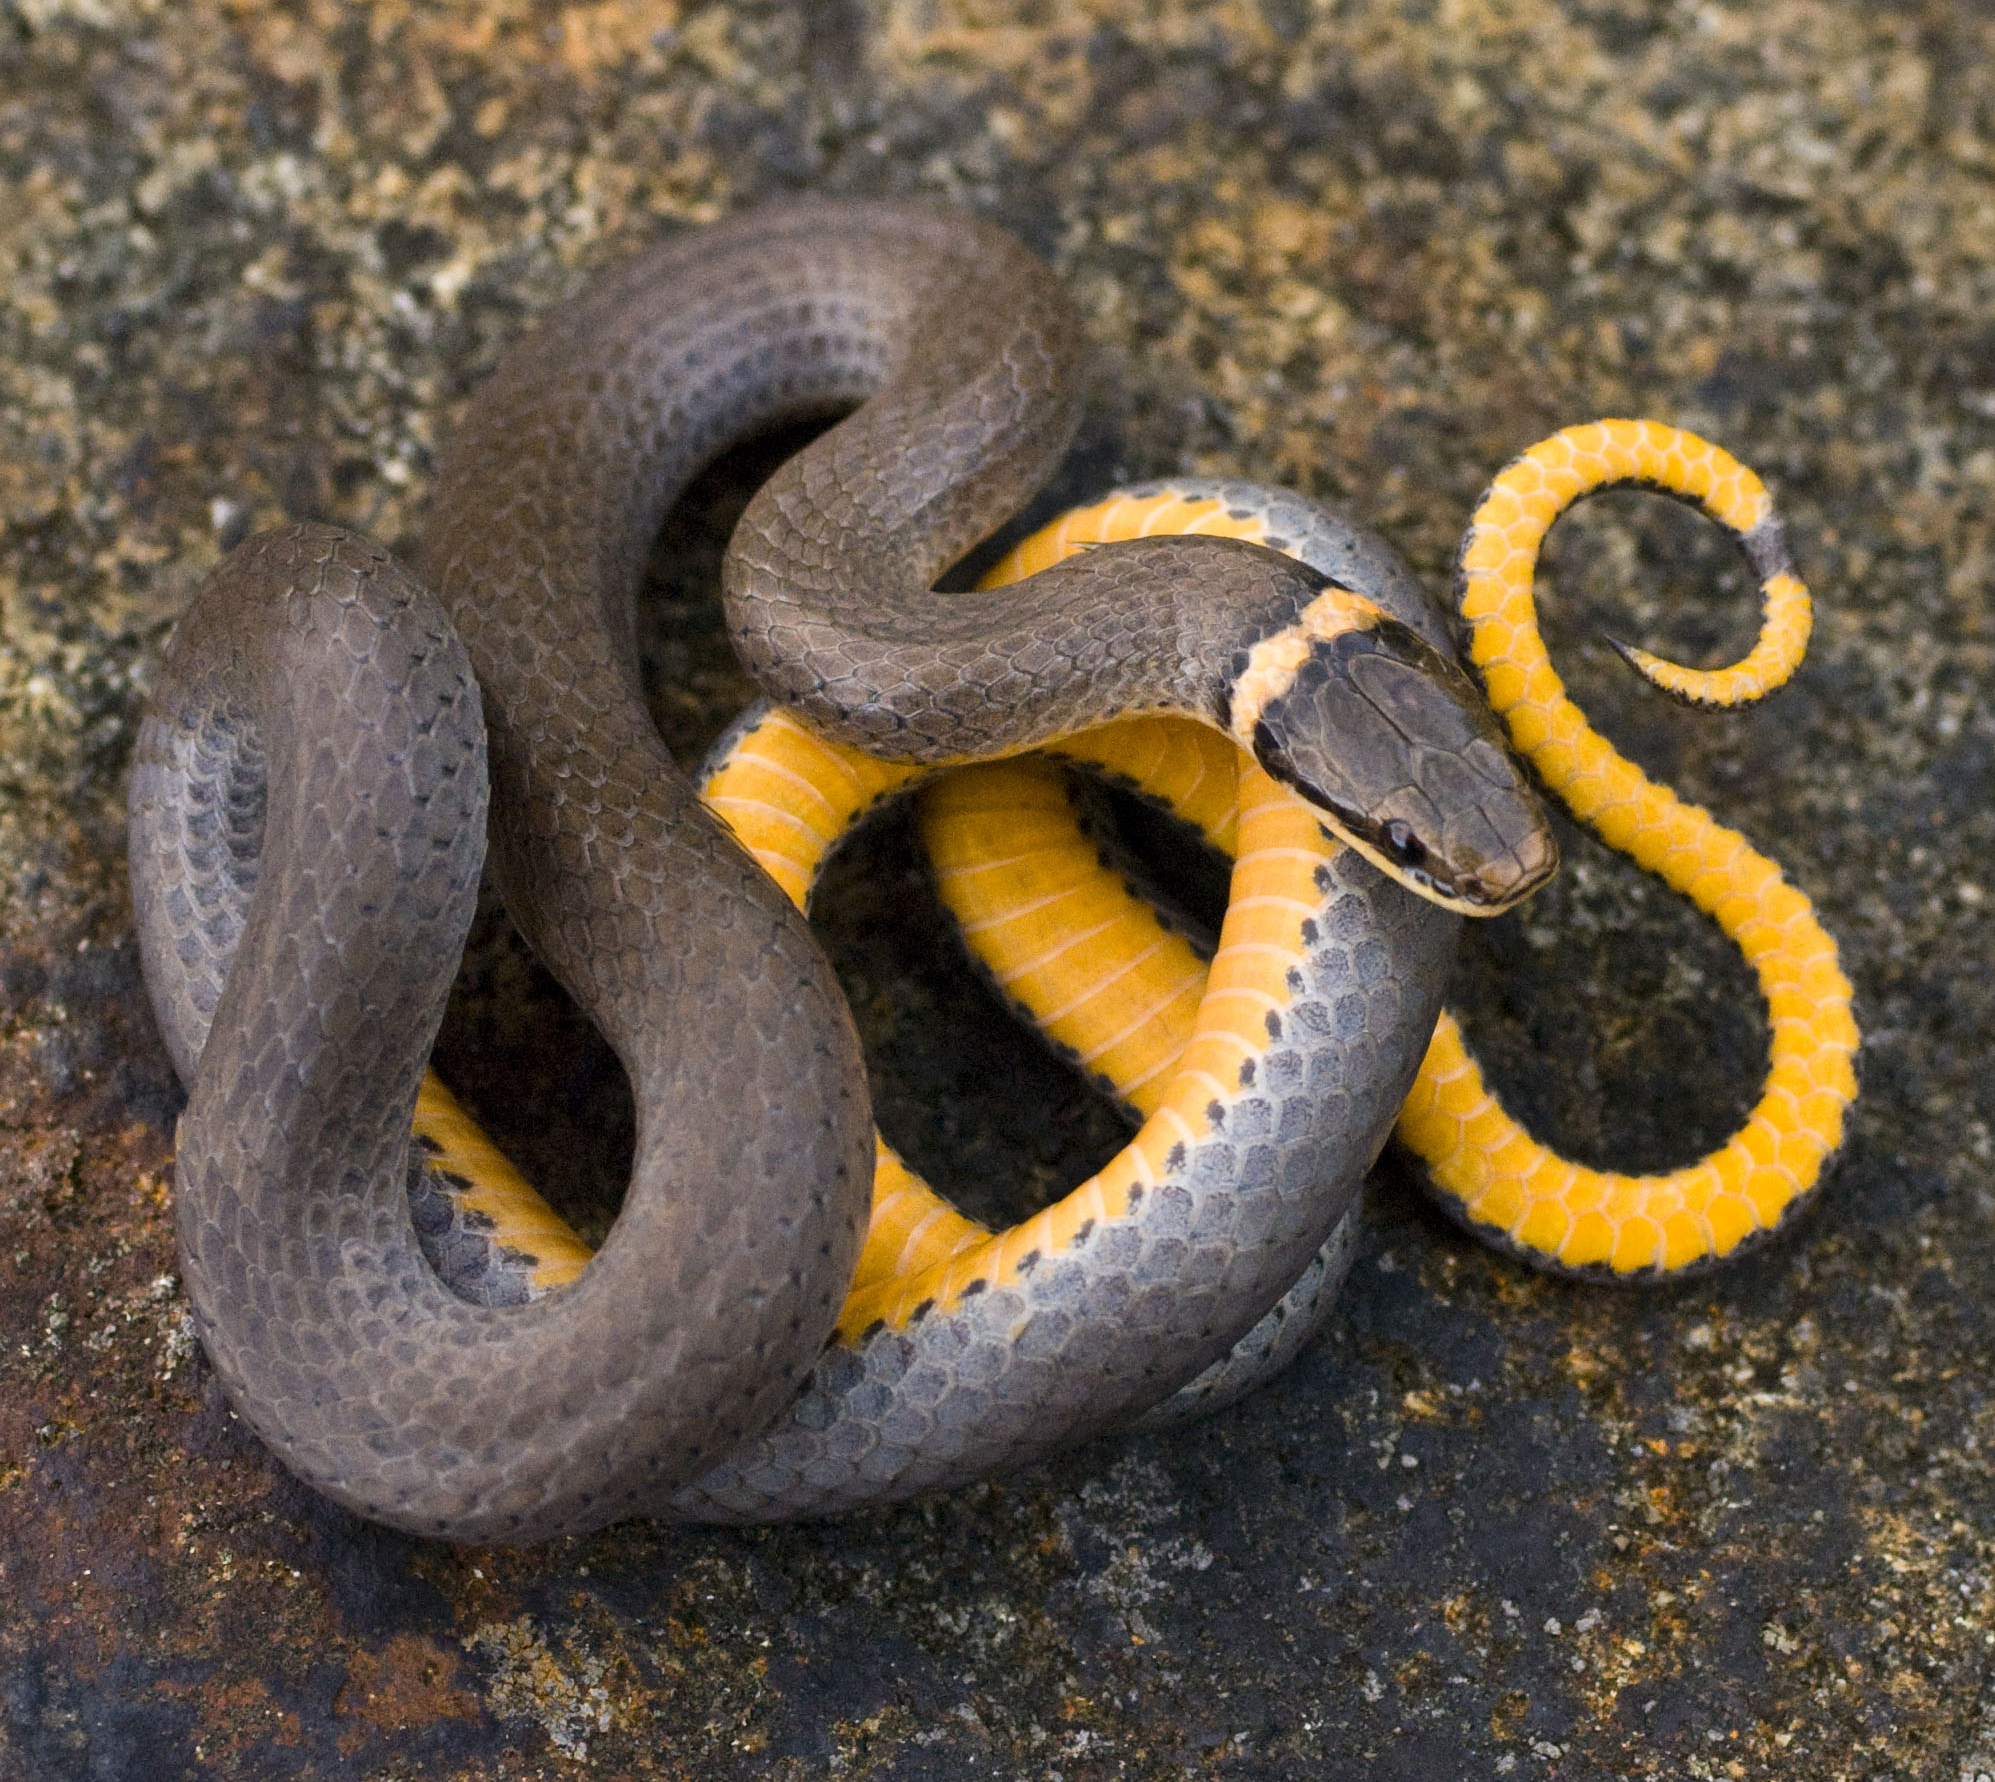 Tricks for Identifying Snakes